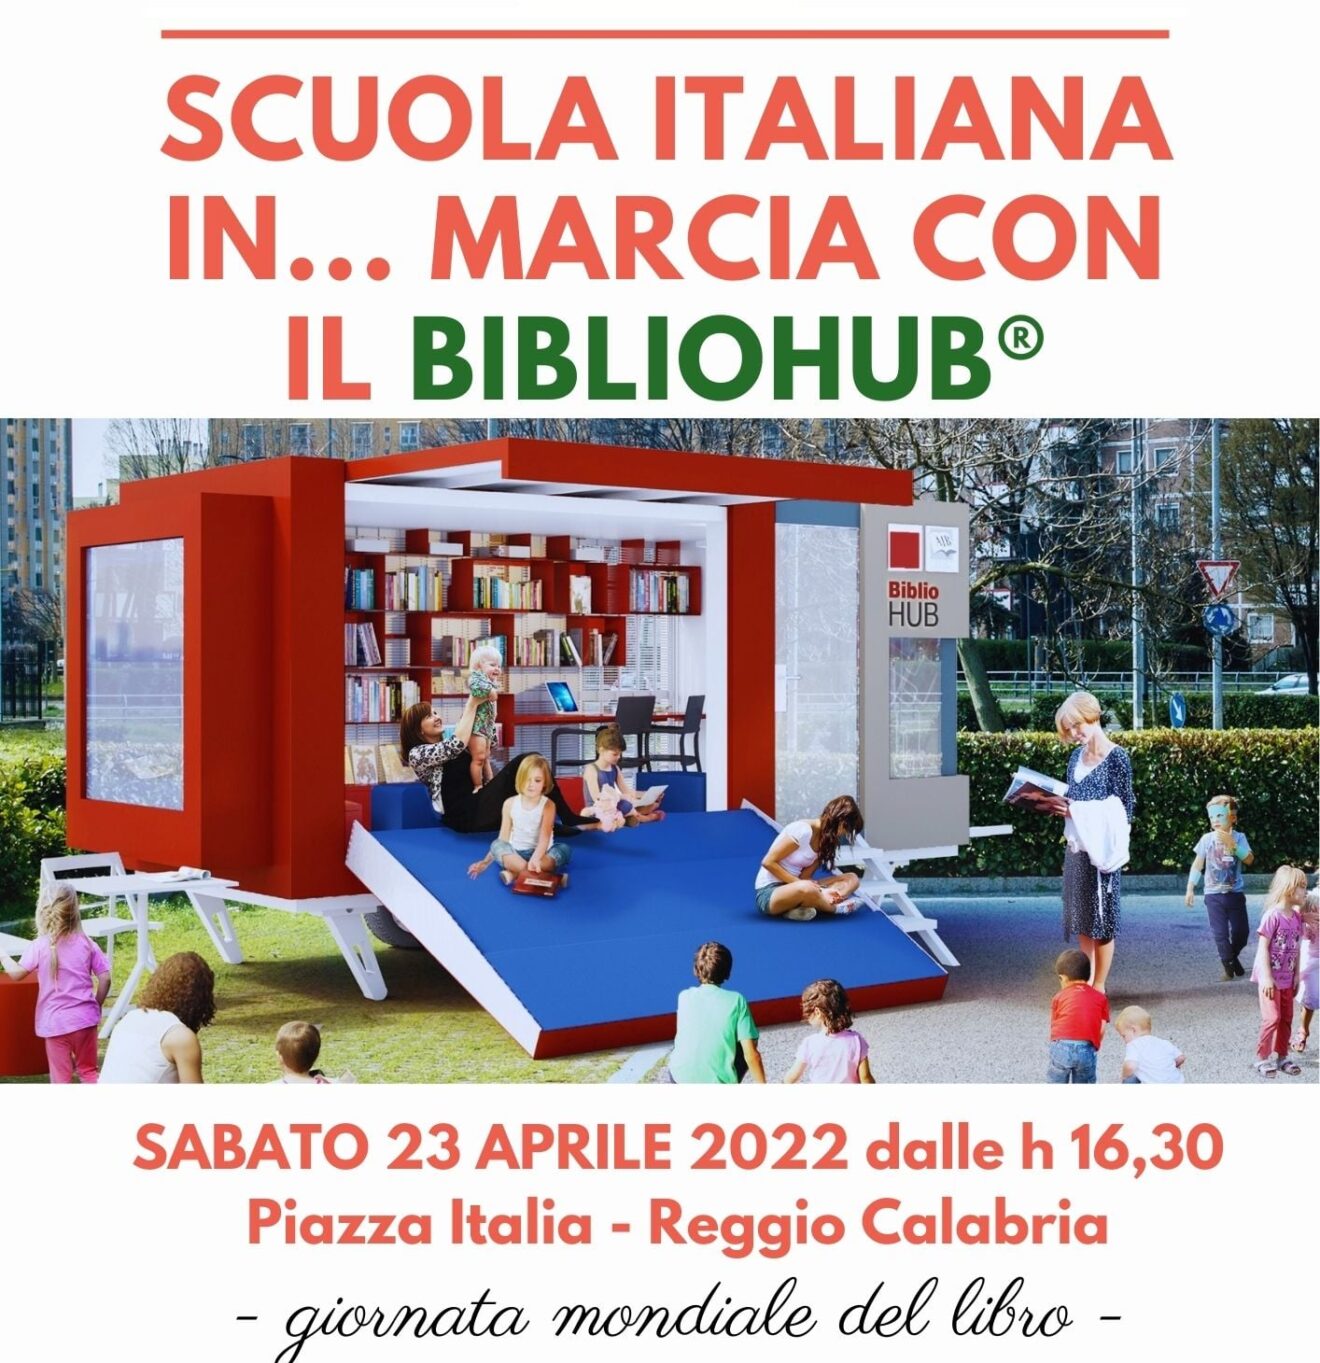 Scuola Italiana in ... marcia con il Bibliohub®